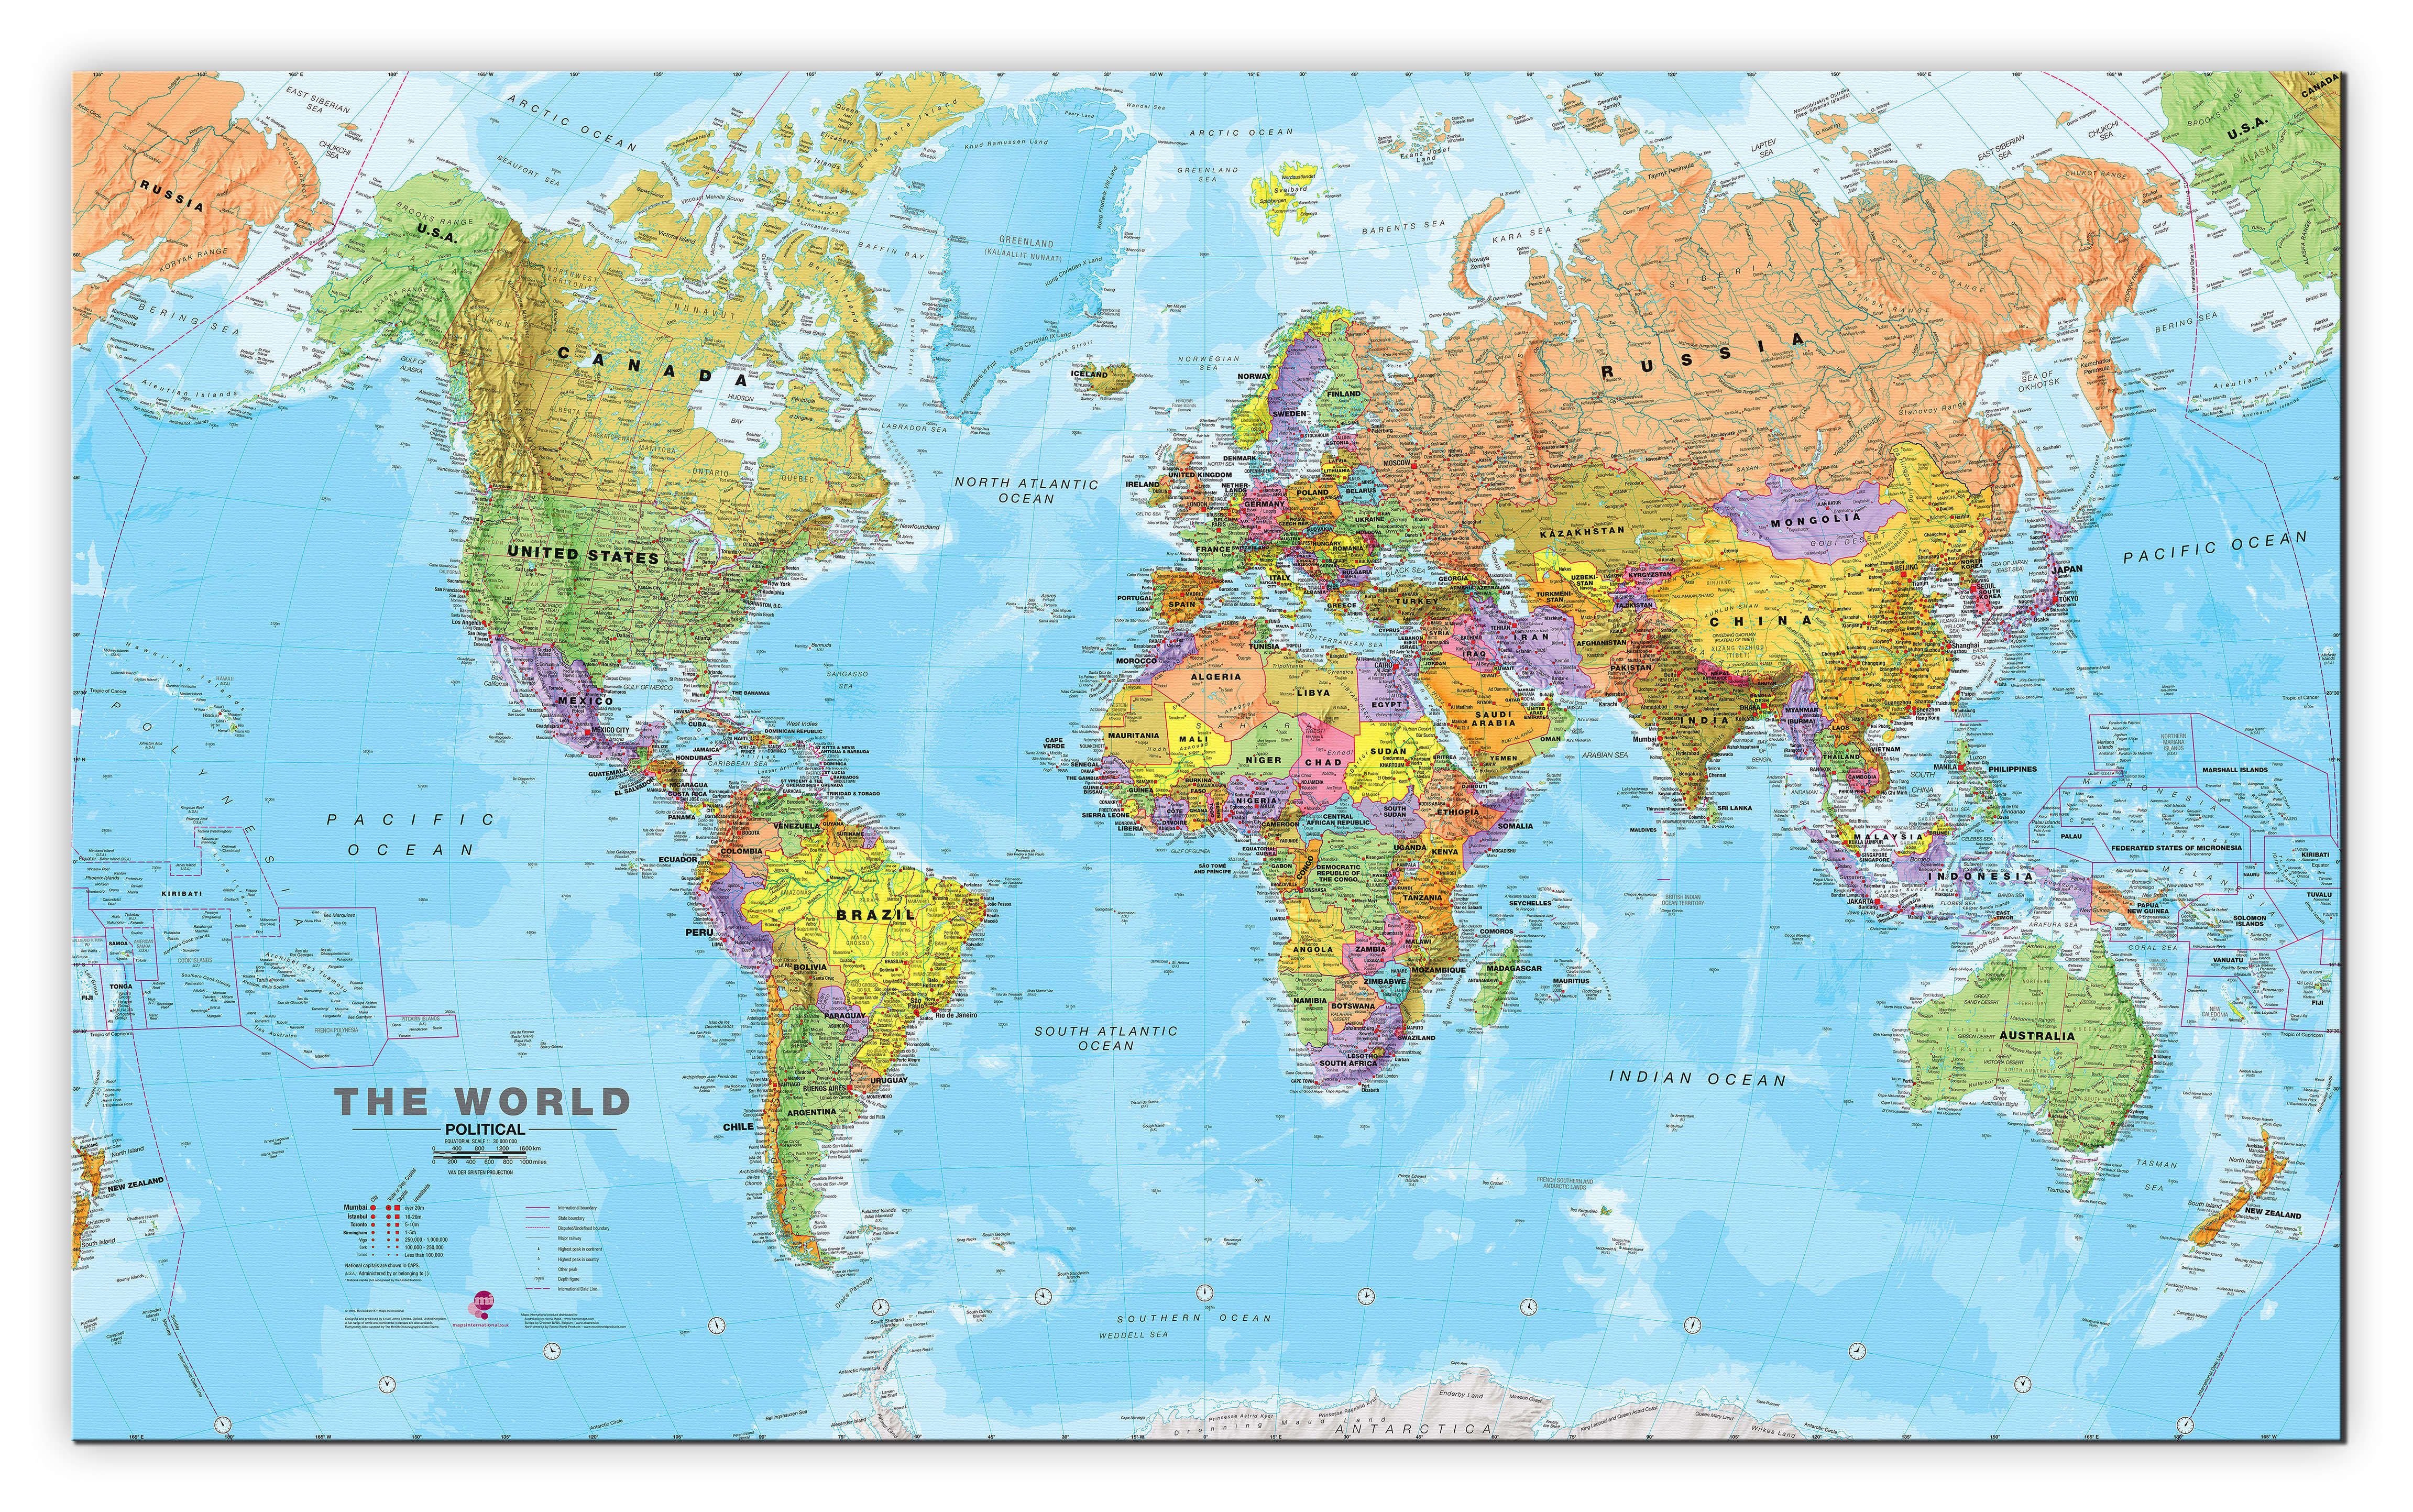 我们最常看到的世界地图并不真实